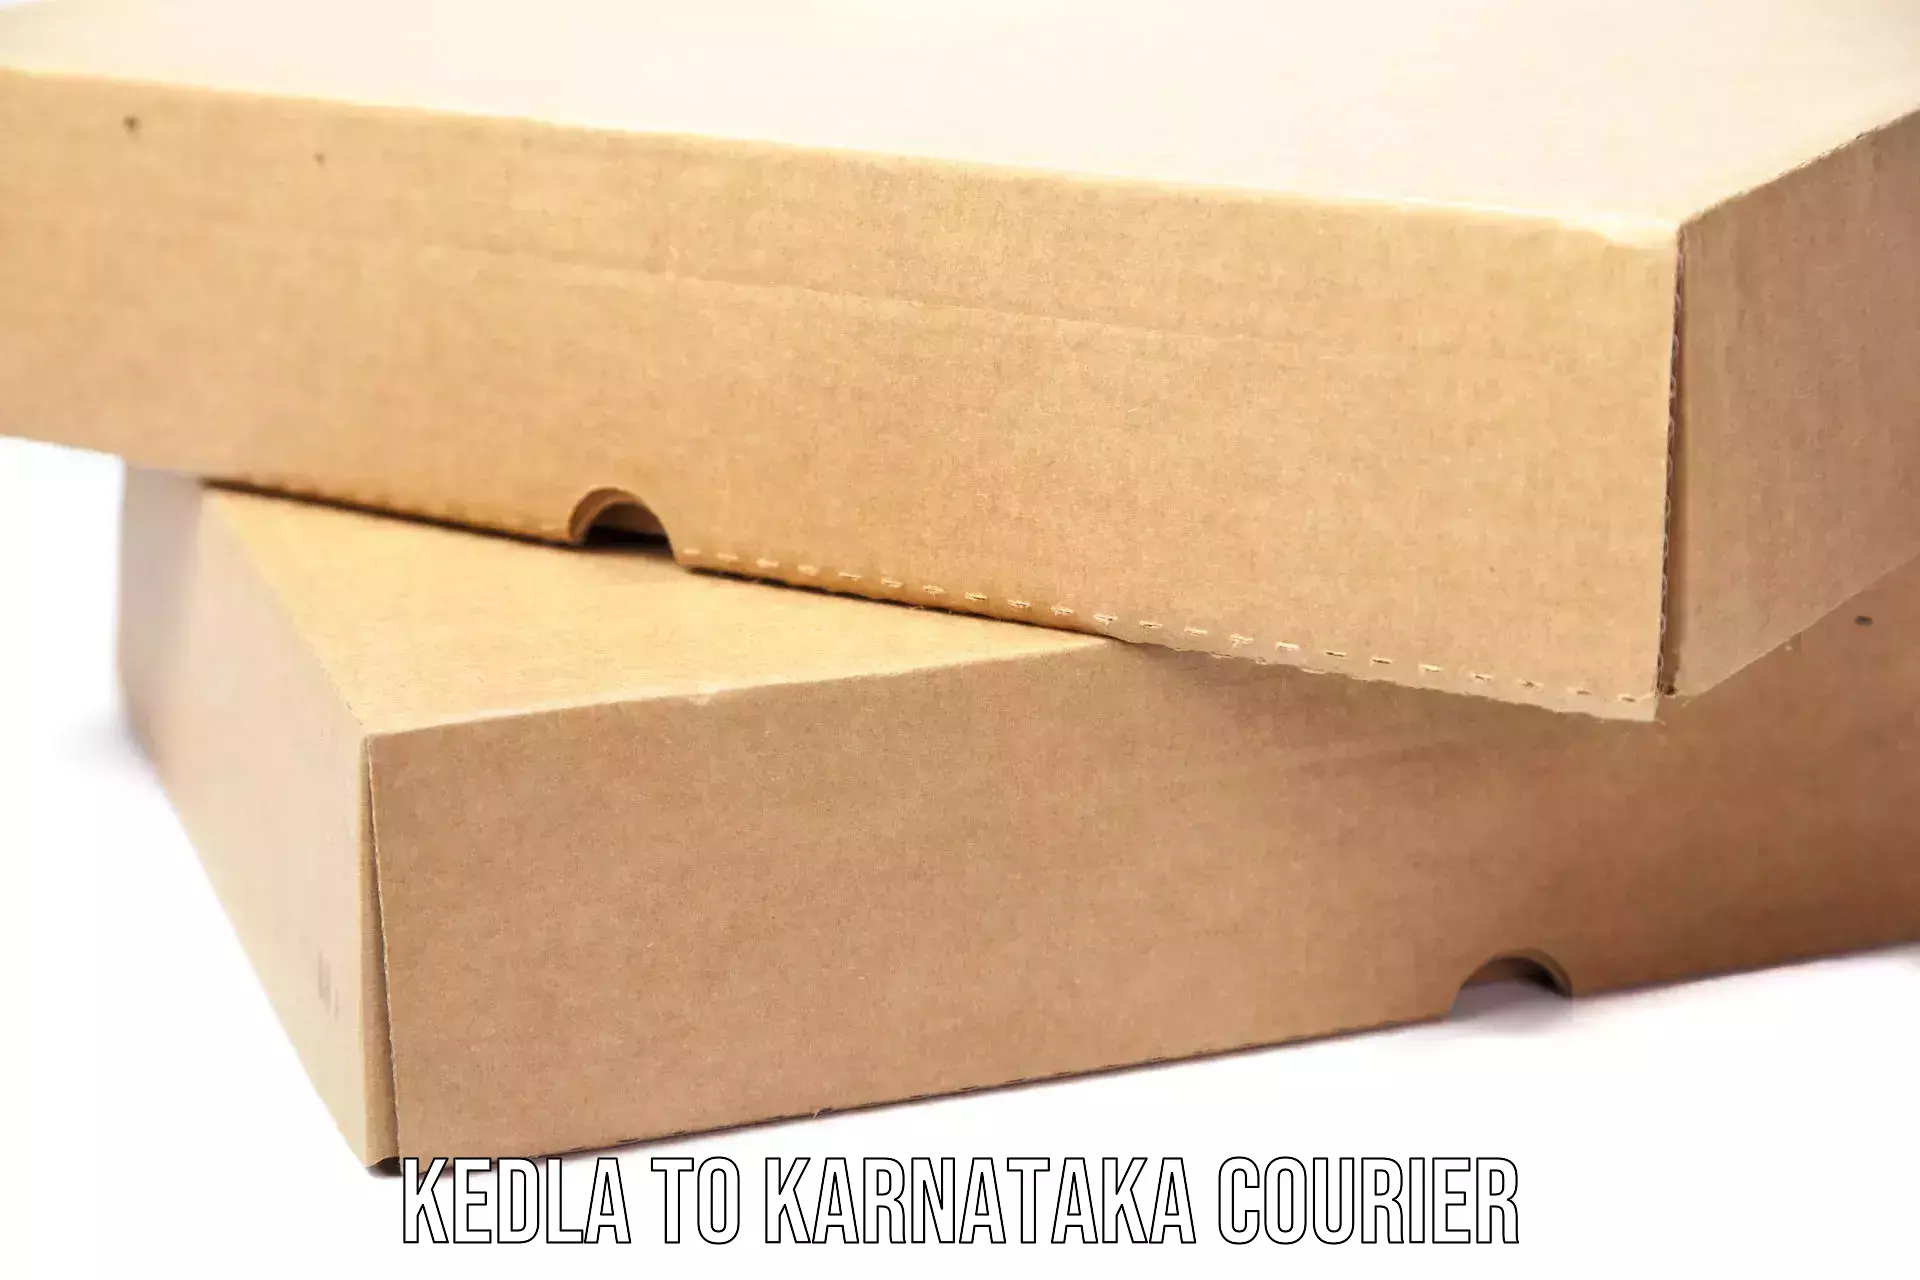 Efficient parcel delivery Kedla to Laxmeshwar